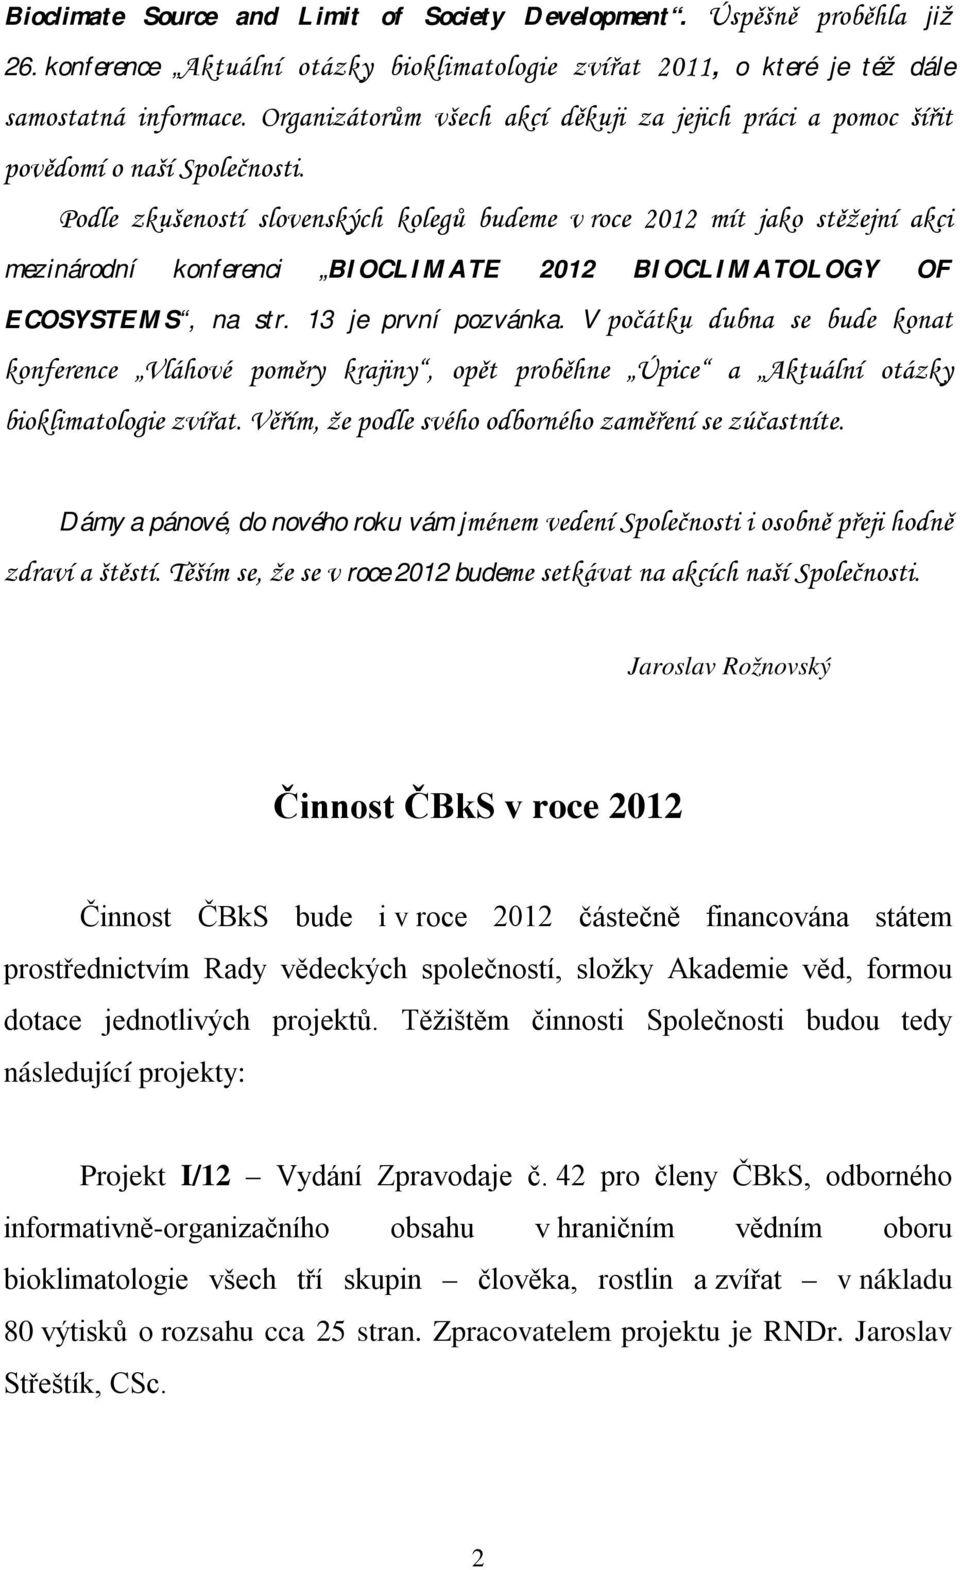 Podle zkušeností slovenských kolegů budeme v roce 2012 mít jako stěžejní akci mezinárodní konferenci BIOCLIMATE 2012 BIOCLIMATOLOGY OF ECOSYSTEMS, na str. 13 je první pozvánka.